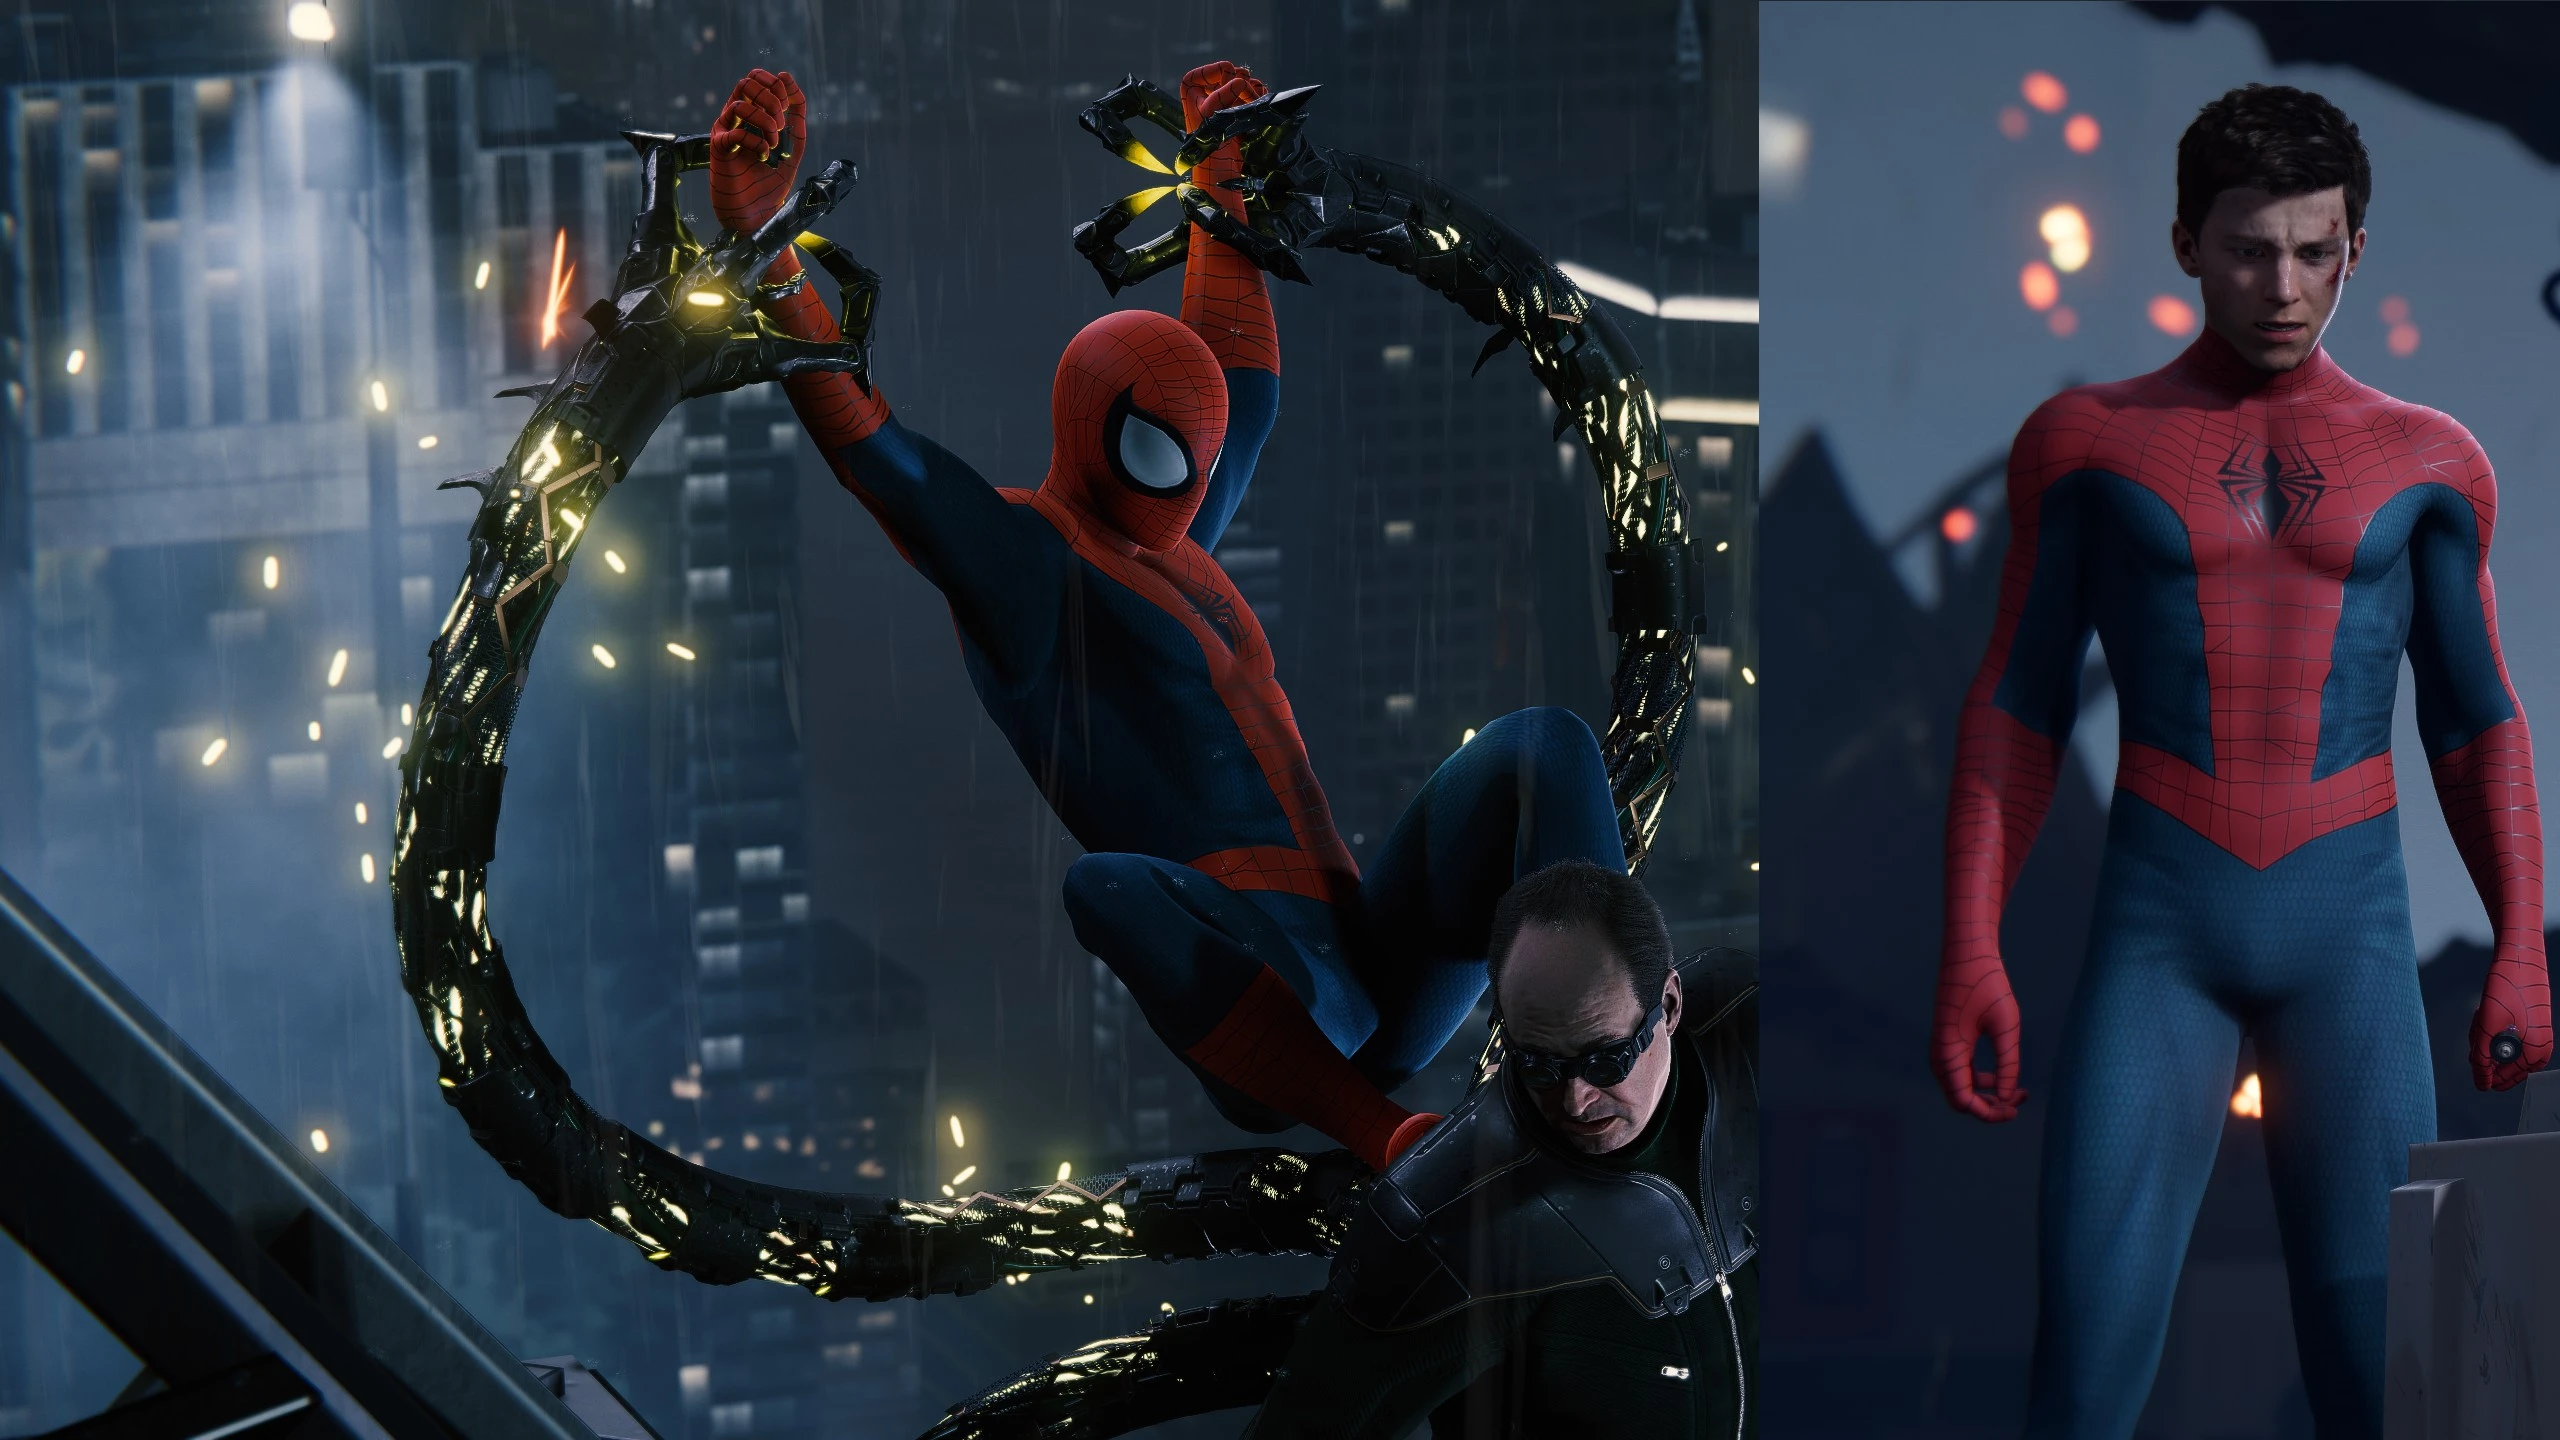 Mod request SPIDERSONA at Marvel's Spider-Man Remastered Nexus